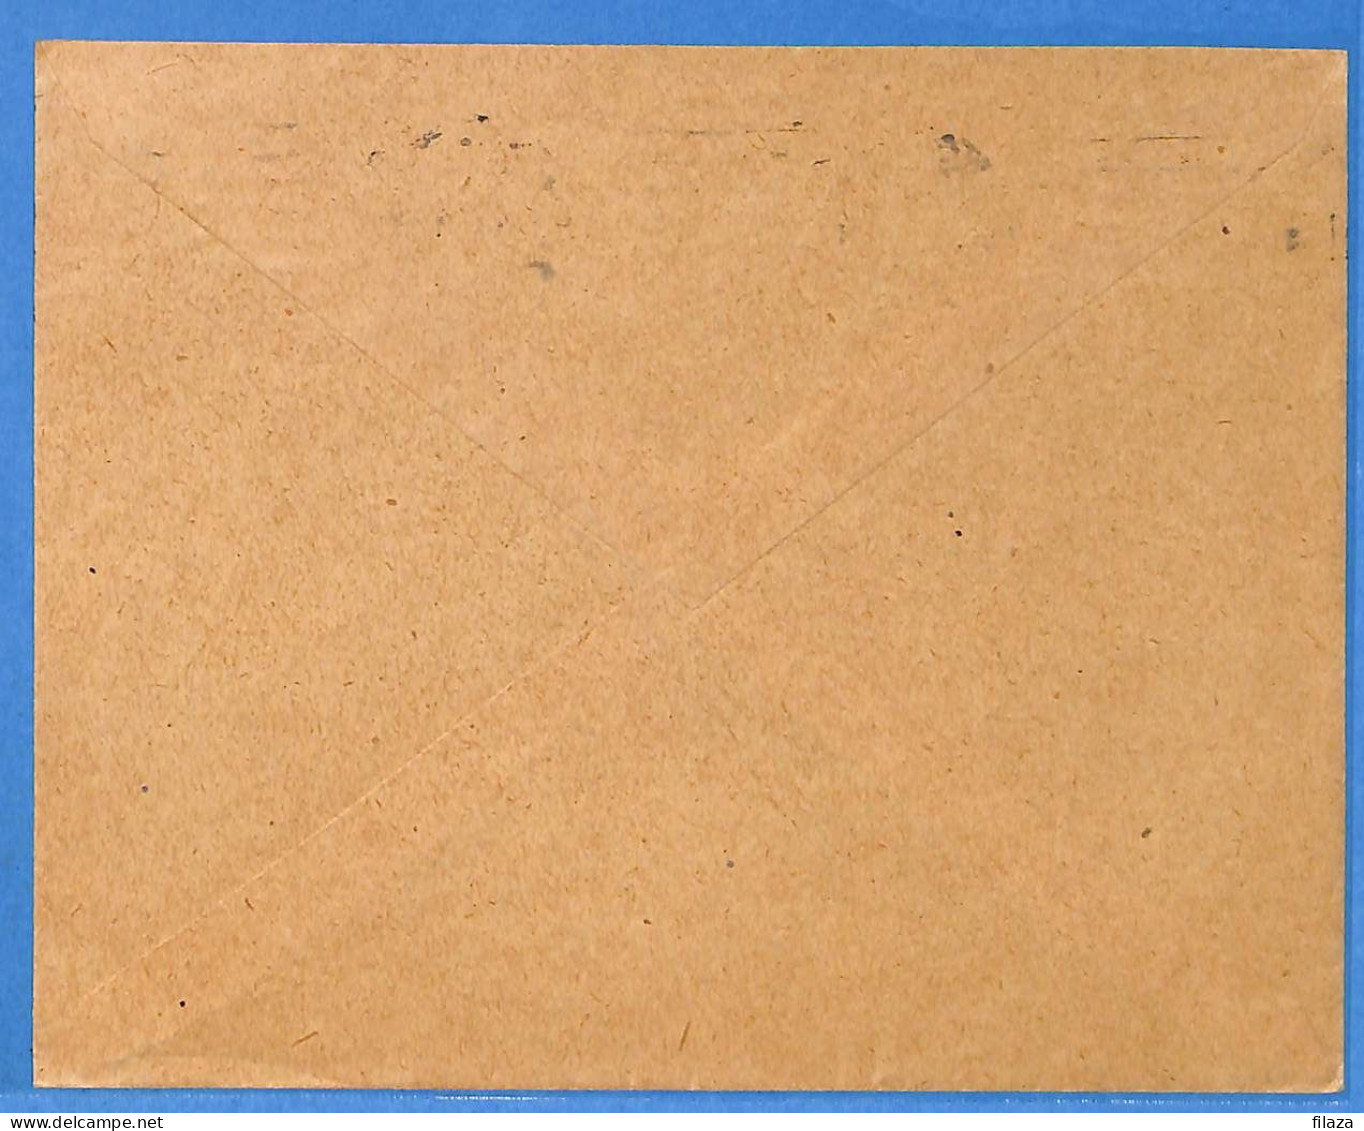 Allemagne Reich 1921 - Lettre De Nurnberg - G33414 - Covers & Documents